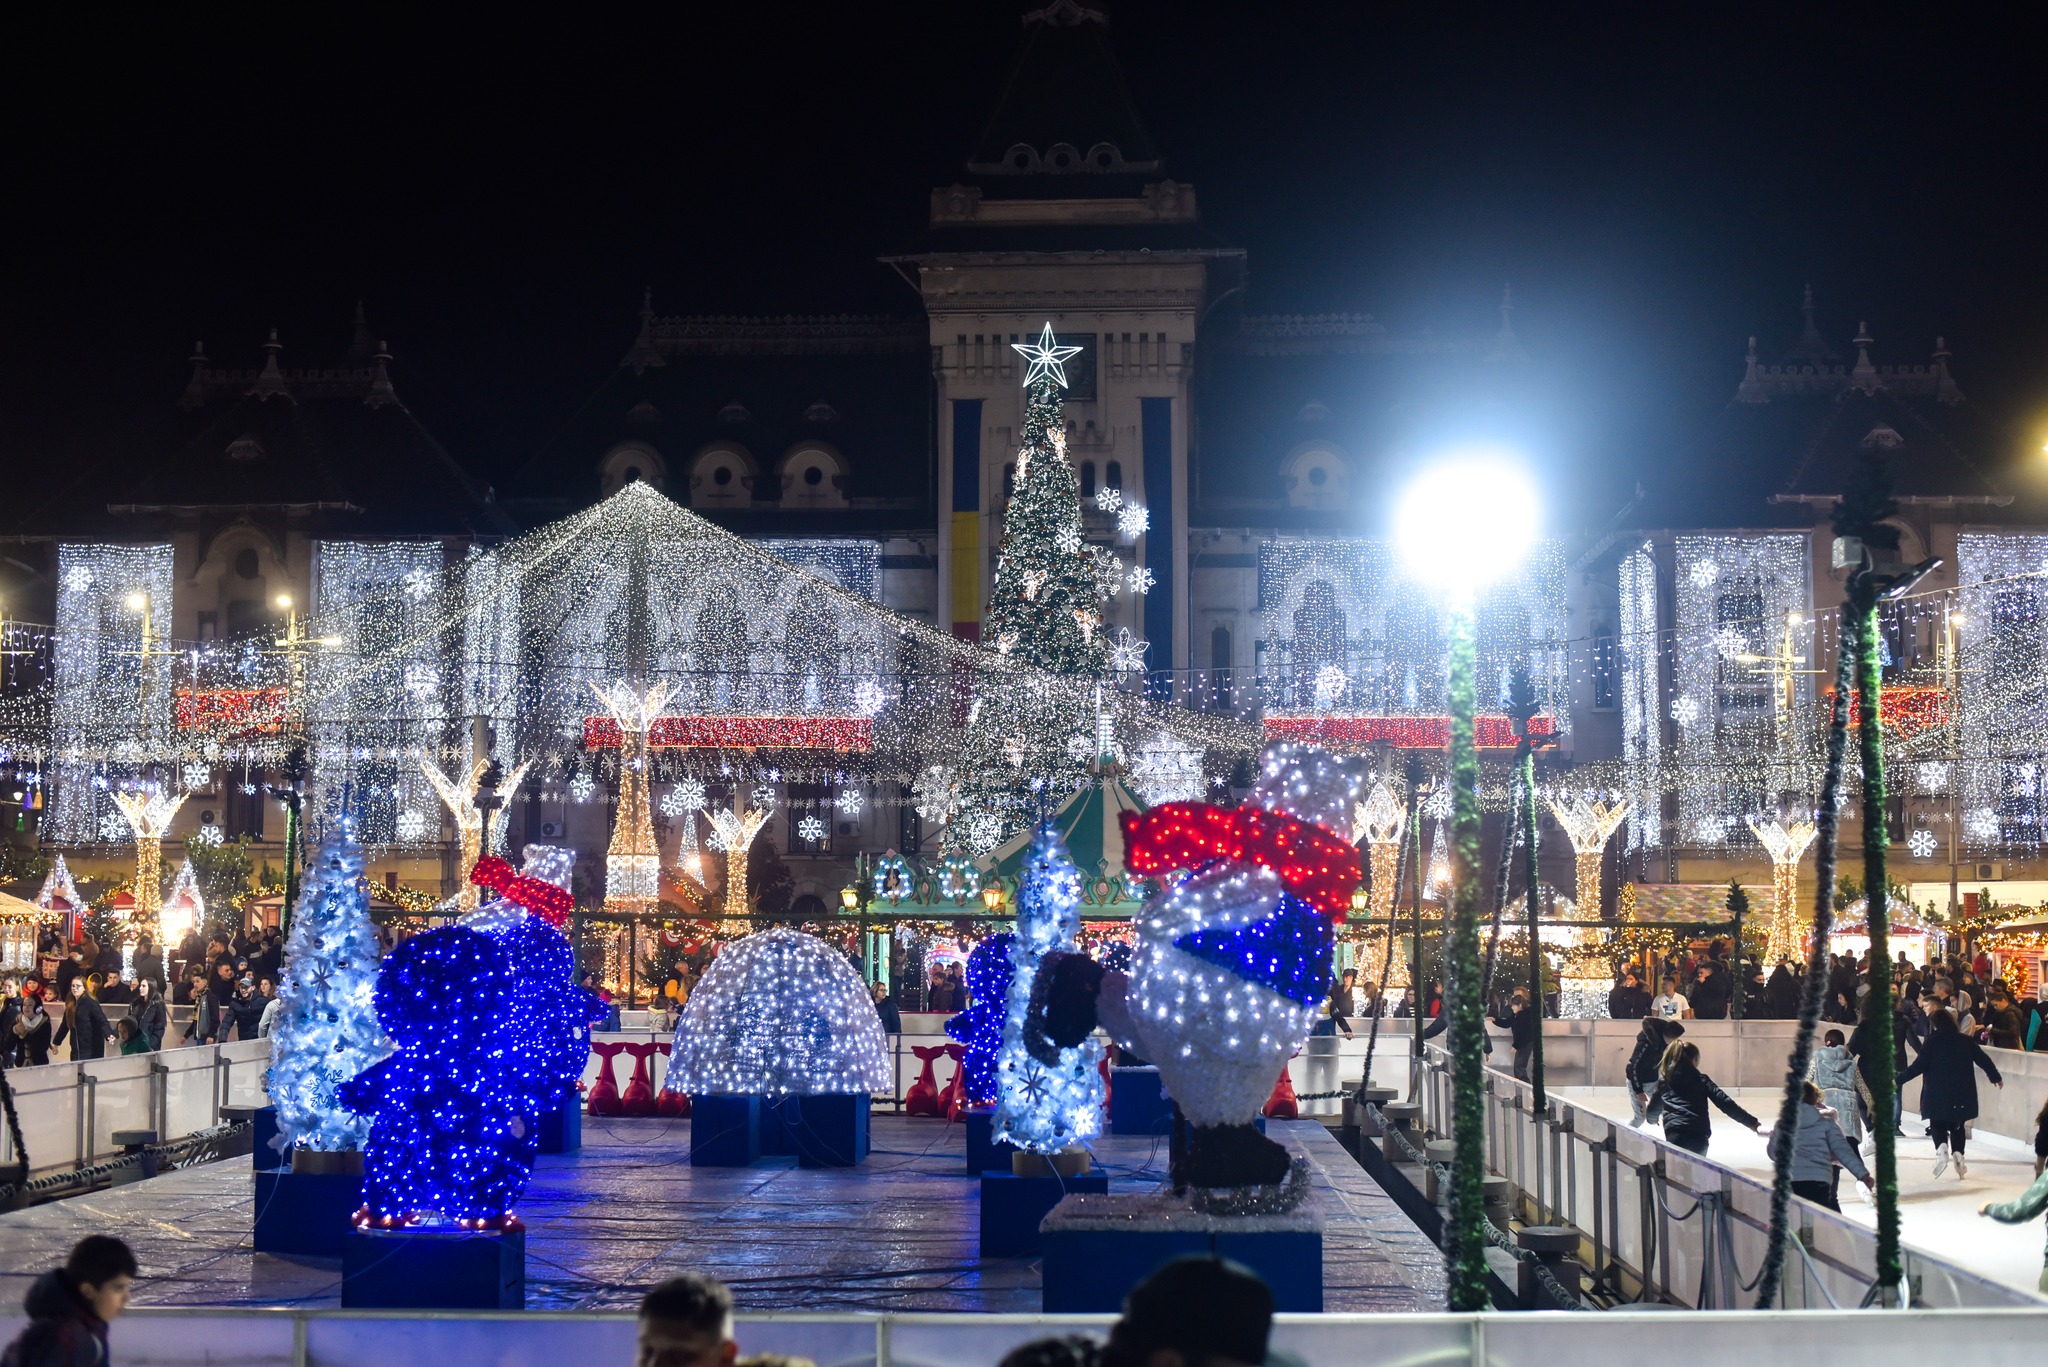 Târgul de Crăciun din Craiova, pe locul al treilea în clasamentul European Best Destinations. Lia Olguța Vasilescu: ”Realmente este o surpriză”